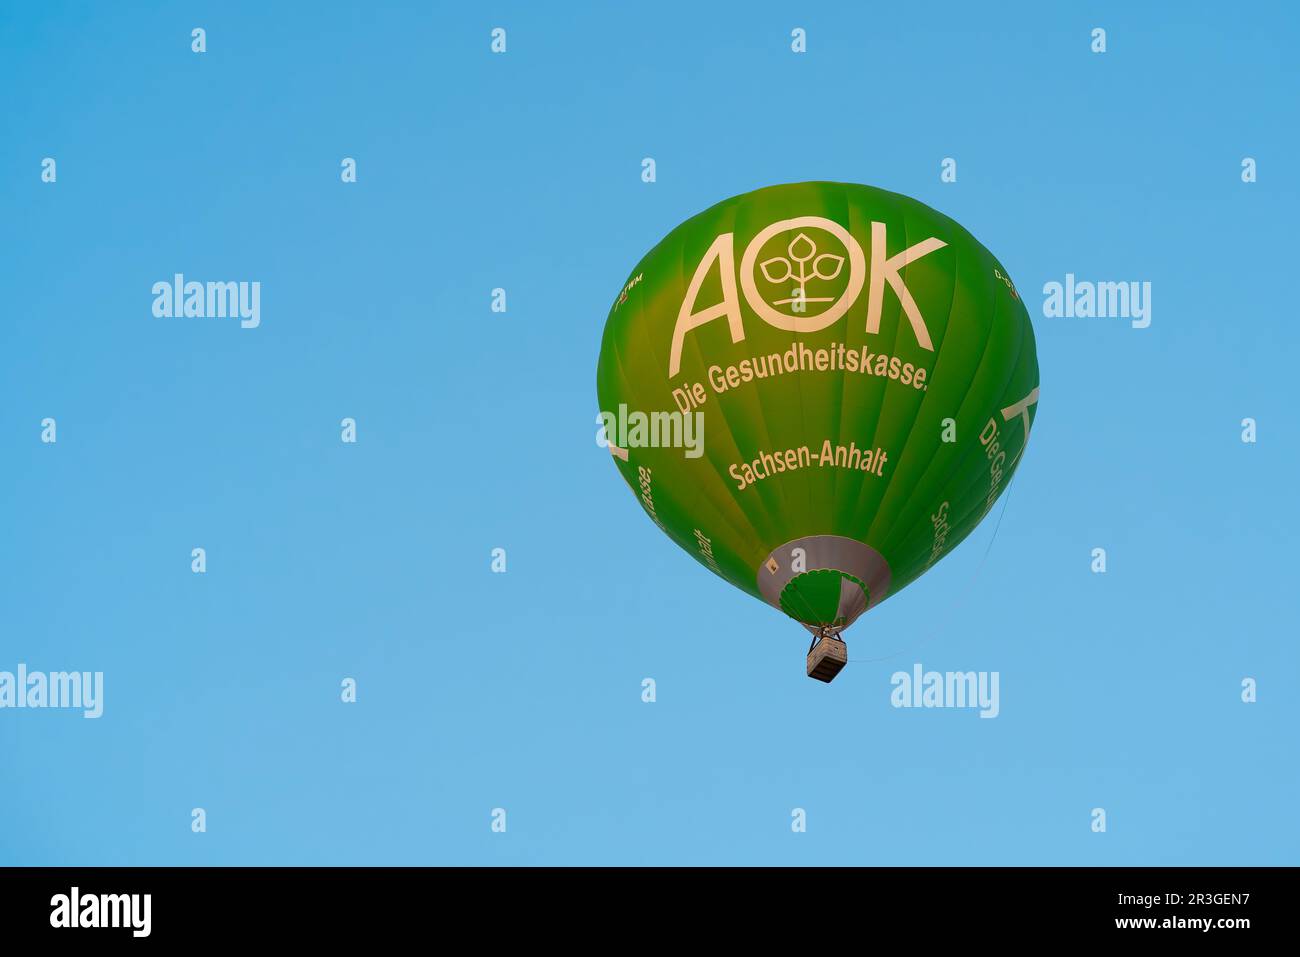 Heißluftballon mit Werbung für die Krankenversicherung AOK am Himmel von Magdeburg in Deutschland Stockfoto